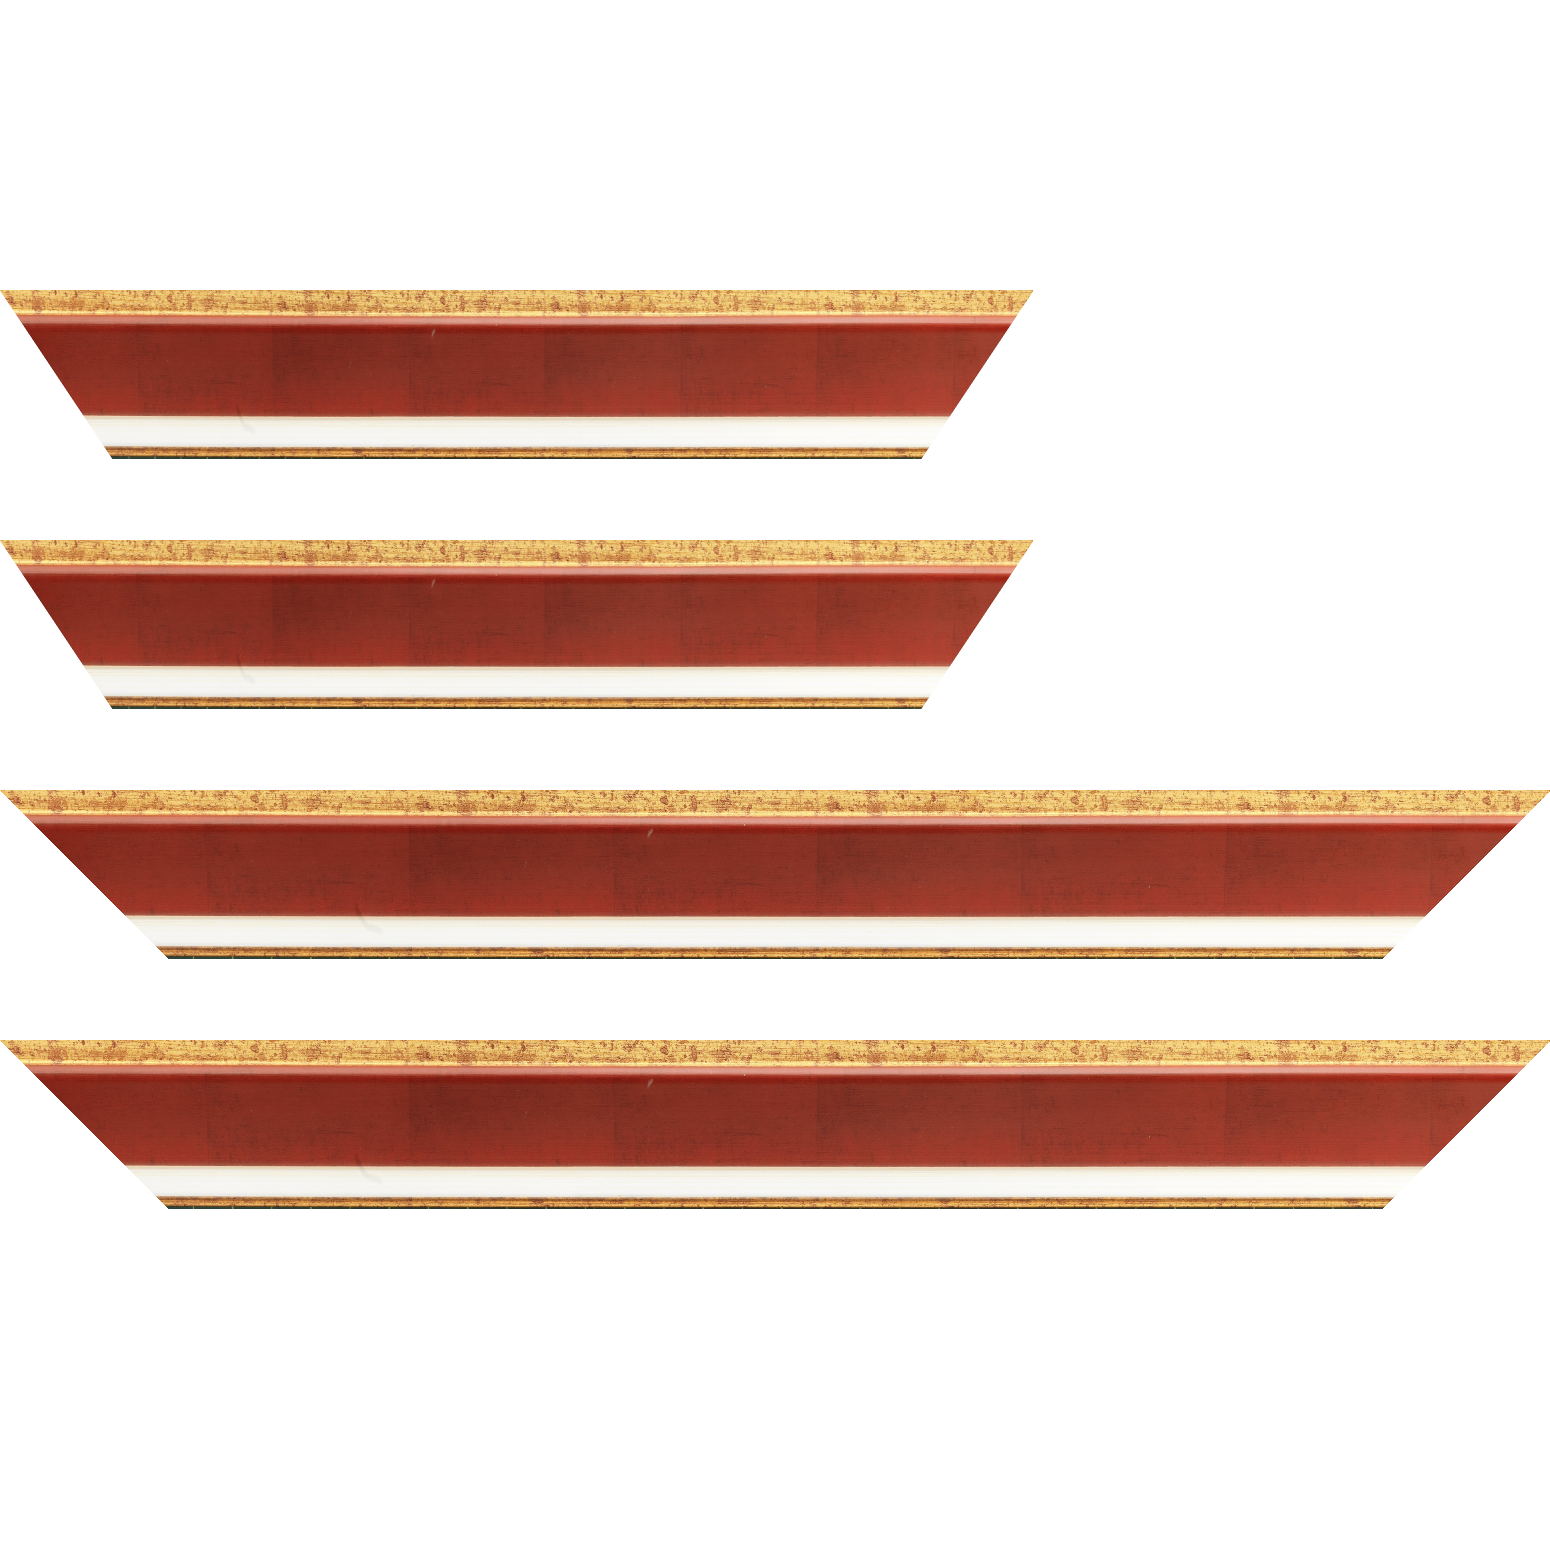 Baguette service précoupé bois profil incliné largeur 5.4cm couleur bordeaux marie louise crème filet or intégrée